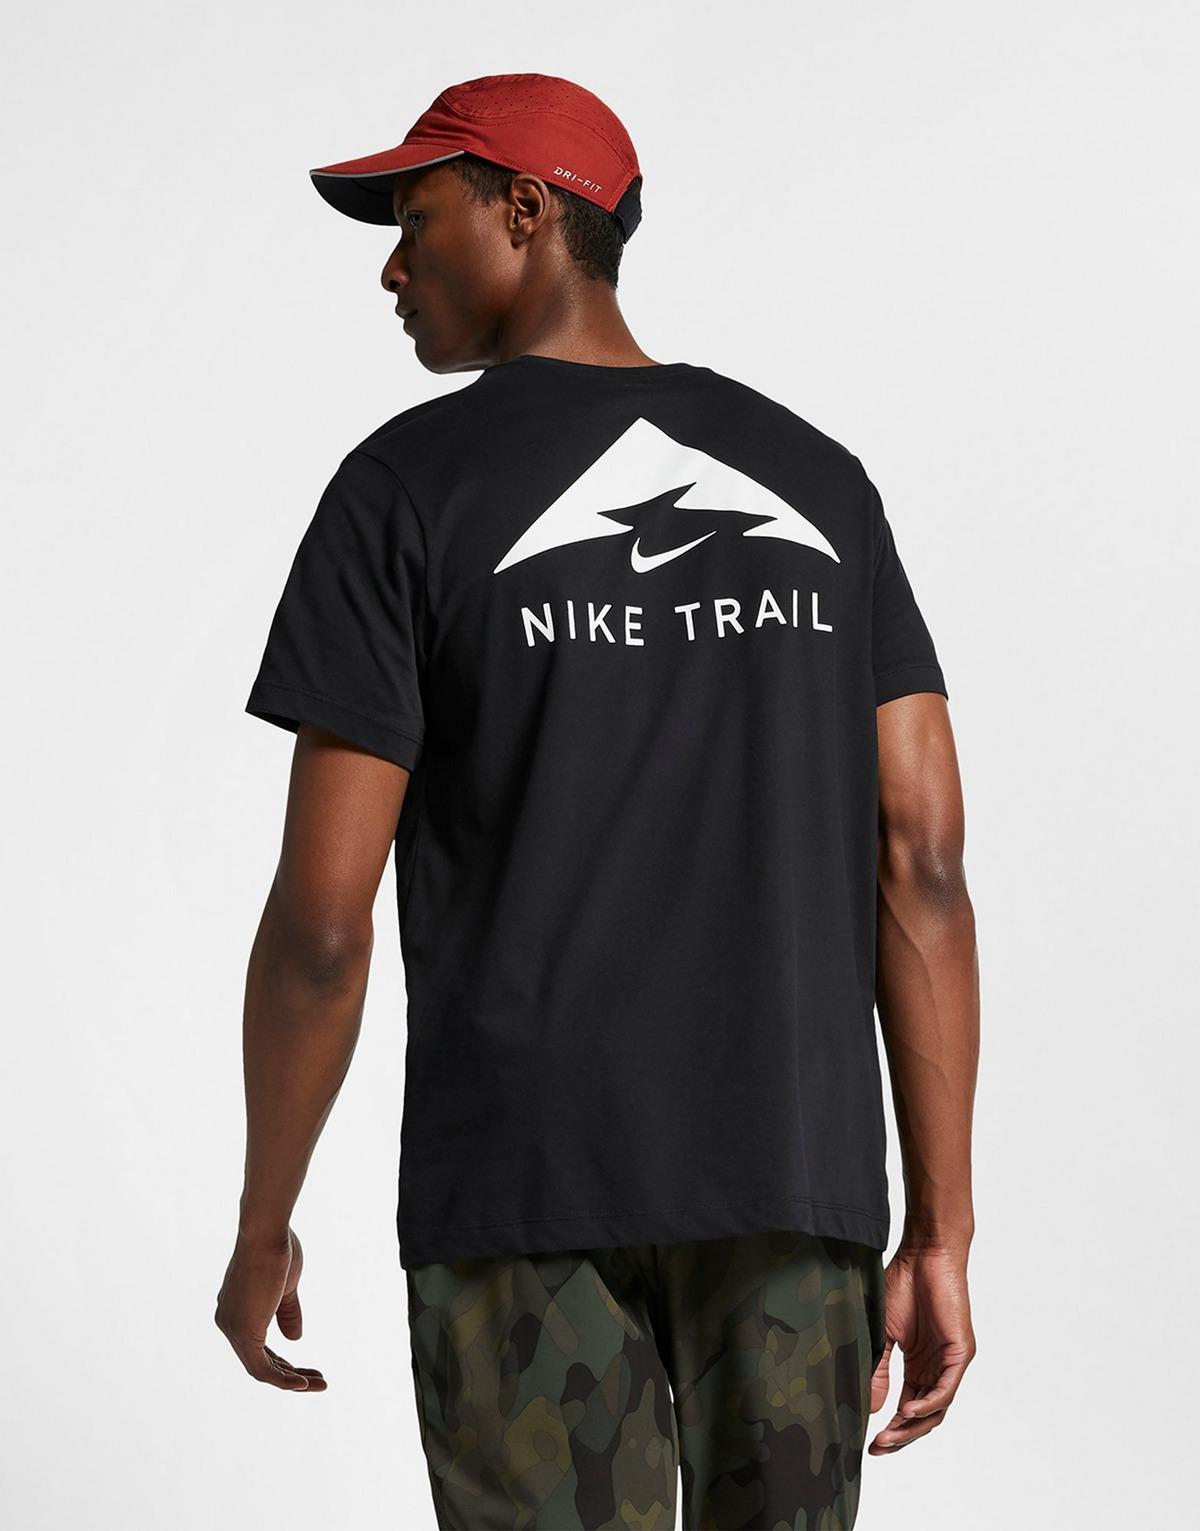 مخطوب nike trail sweatshirt 